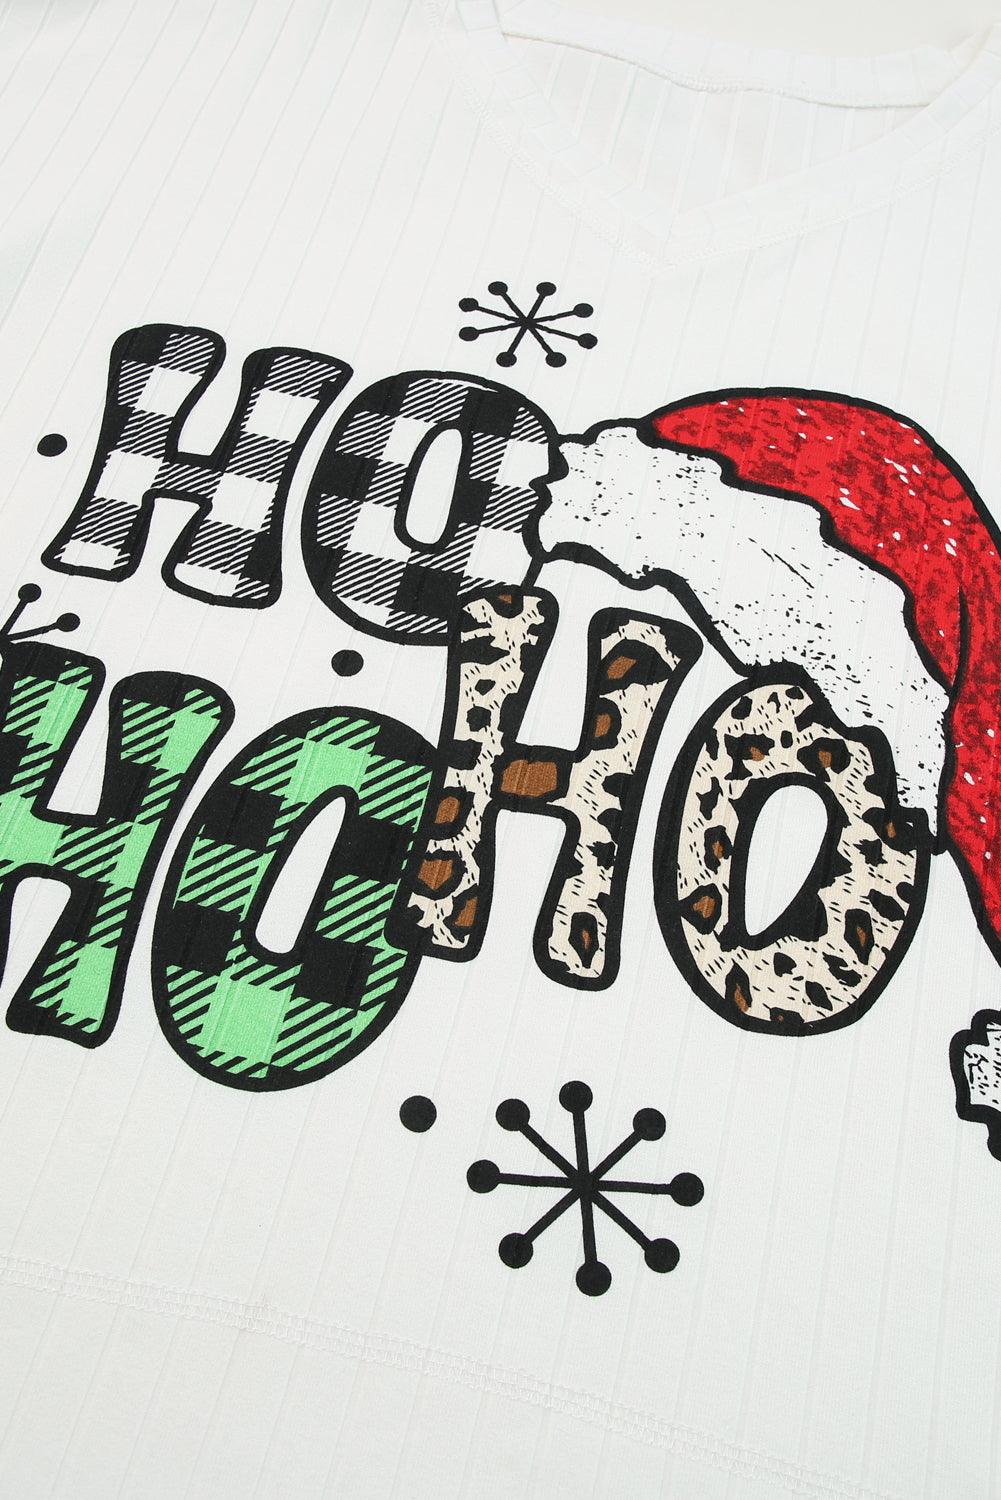 White HOHOHO Christmas Graphic Wide Rib Long Sleeve Top - L & M Kee, LLC